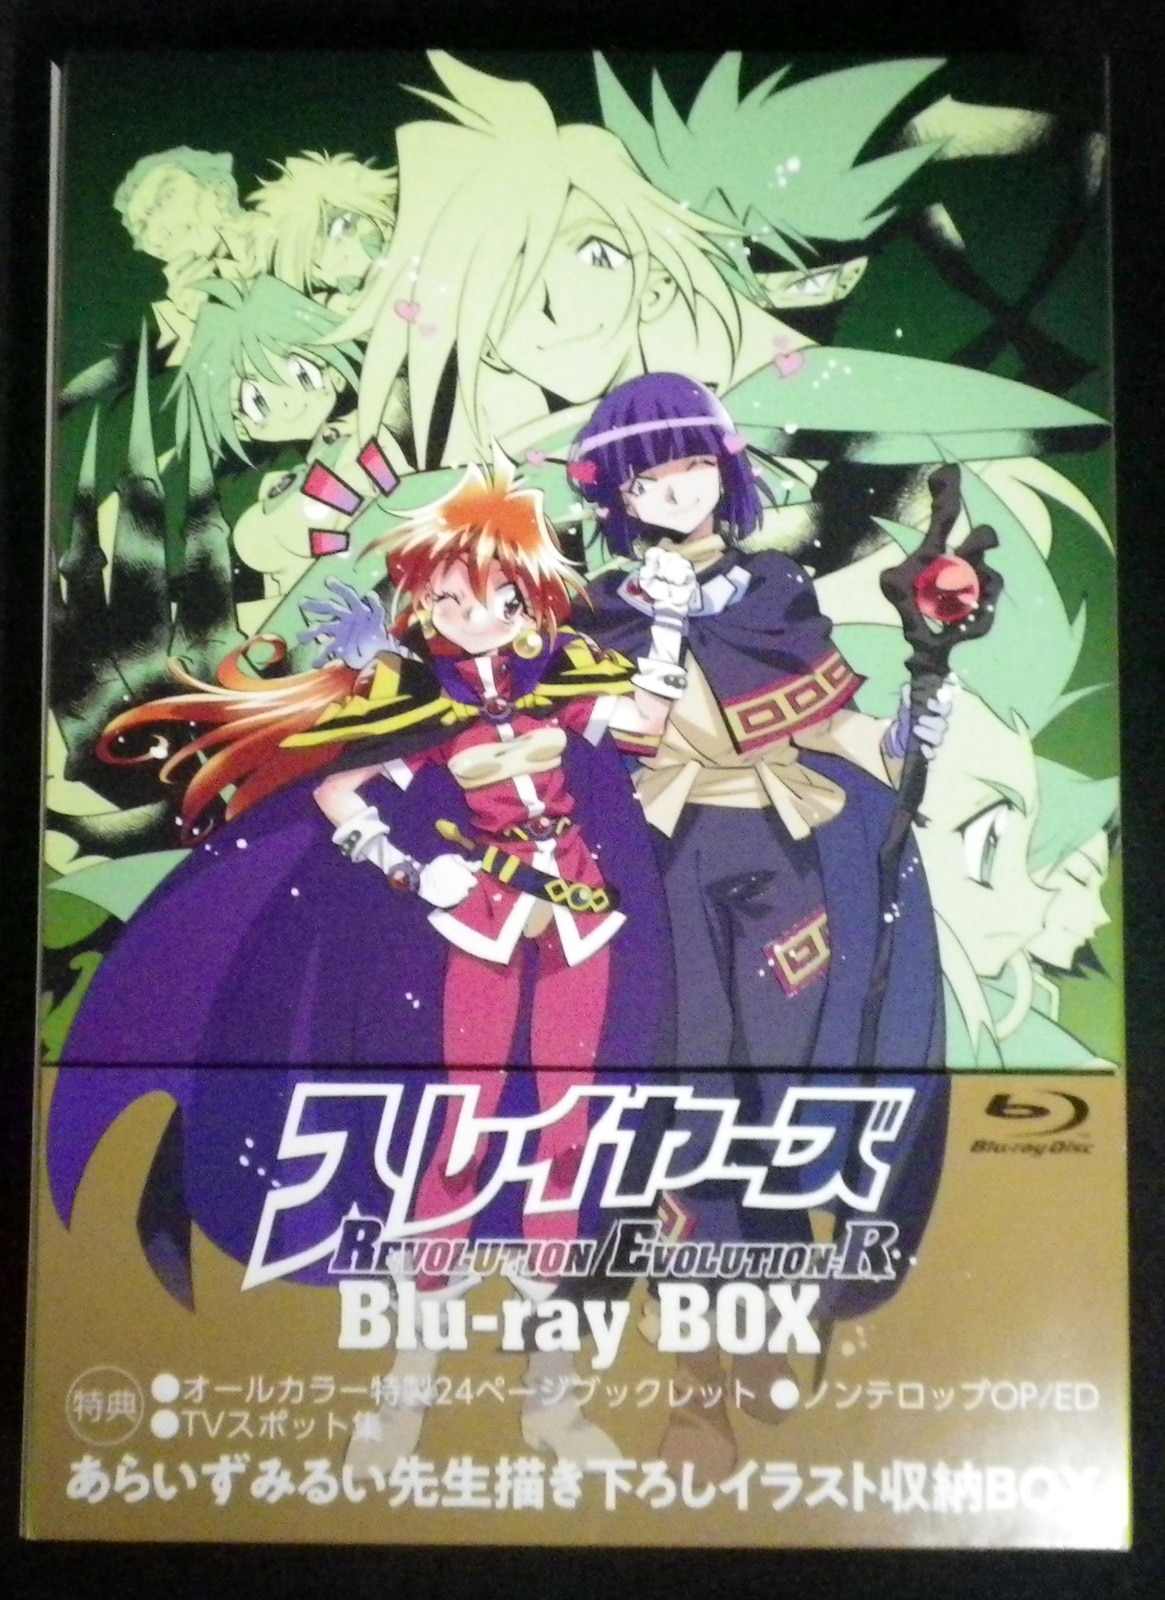 スレイヤーズREVOLUTION/EVOLUTION-R Blu-ray BOX (完全生産限定版)(品 